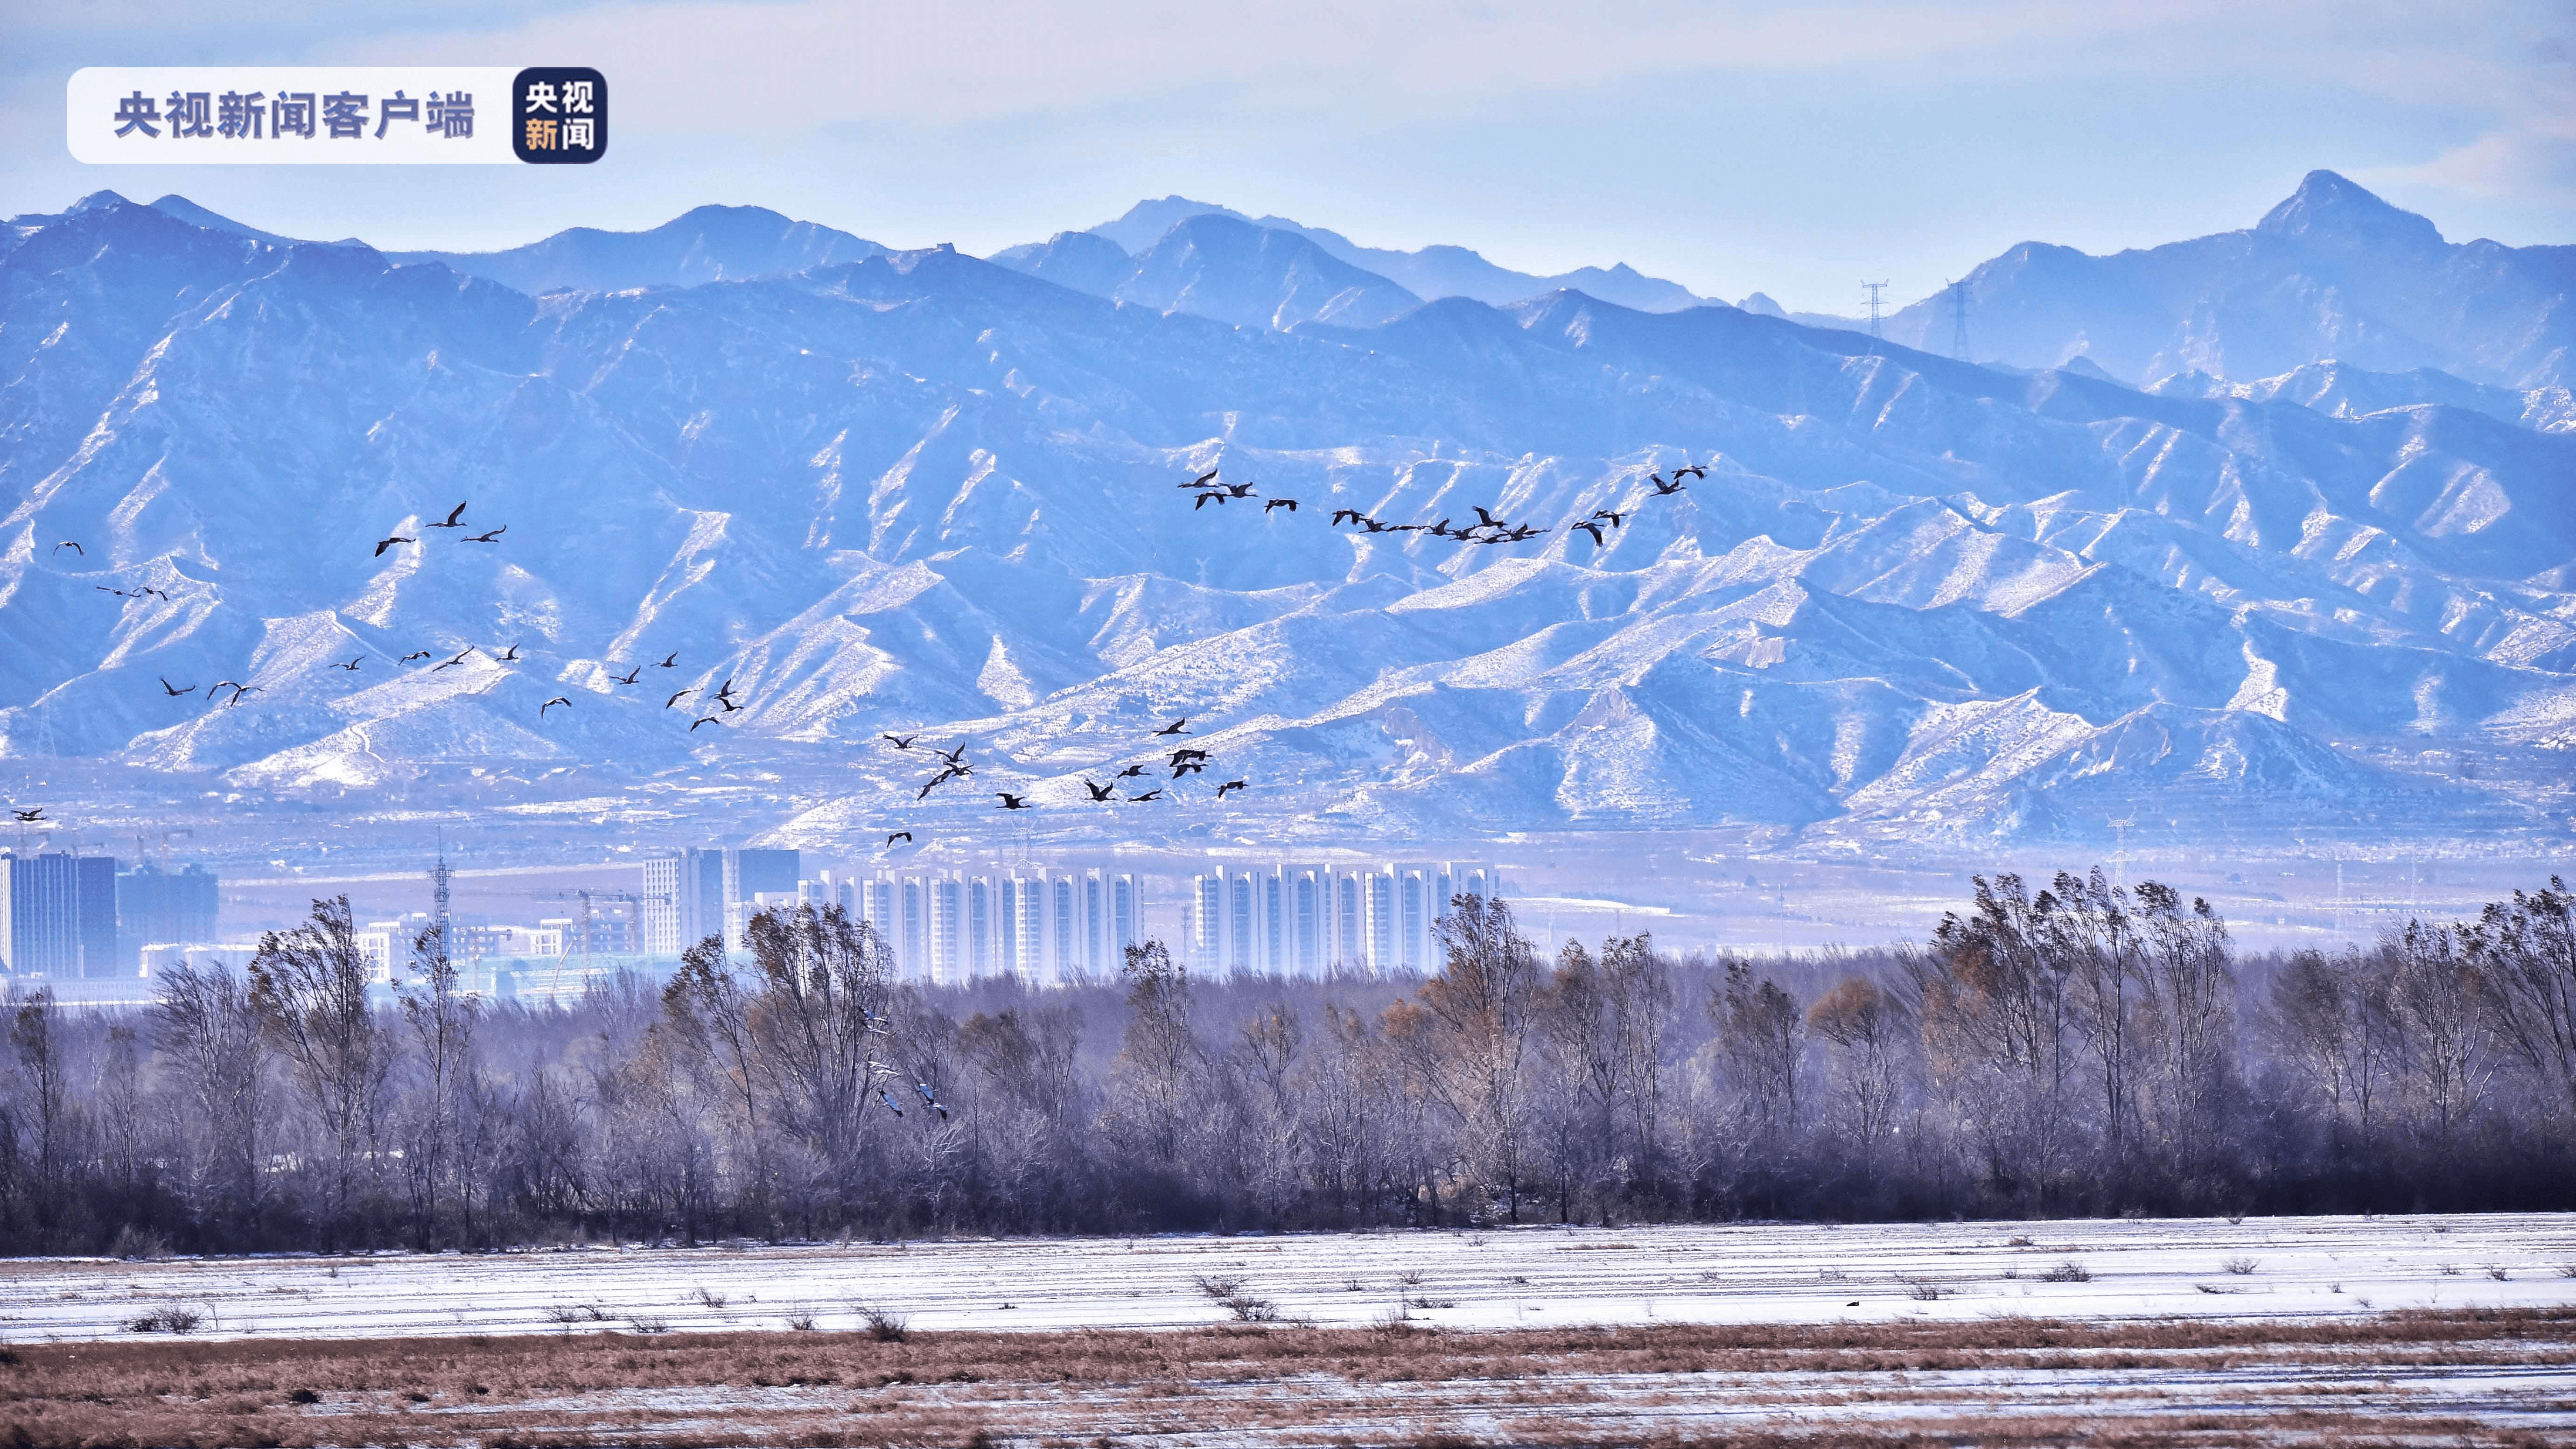 冬日美景北京延庆野鸭湖候鸟成群自在栖息